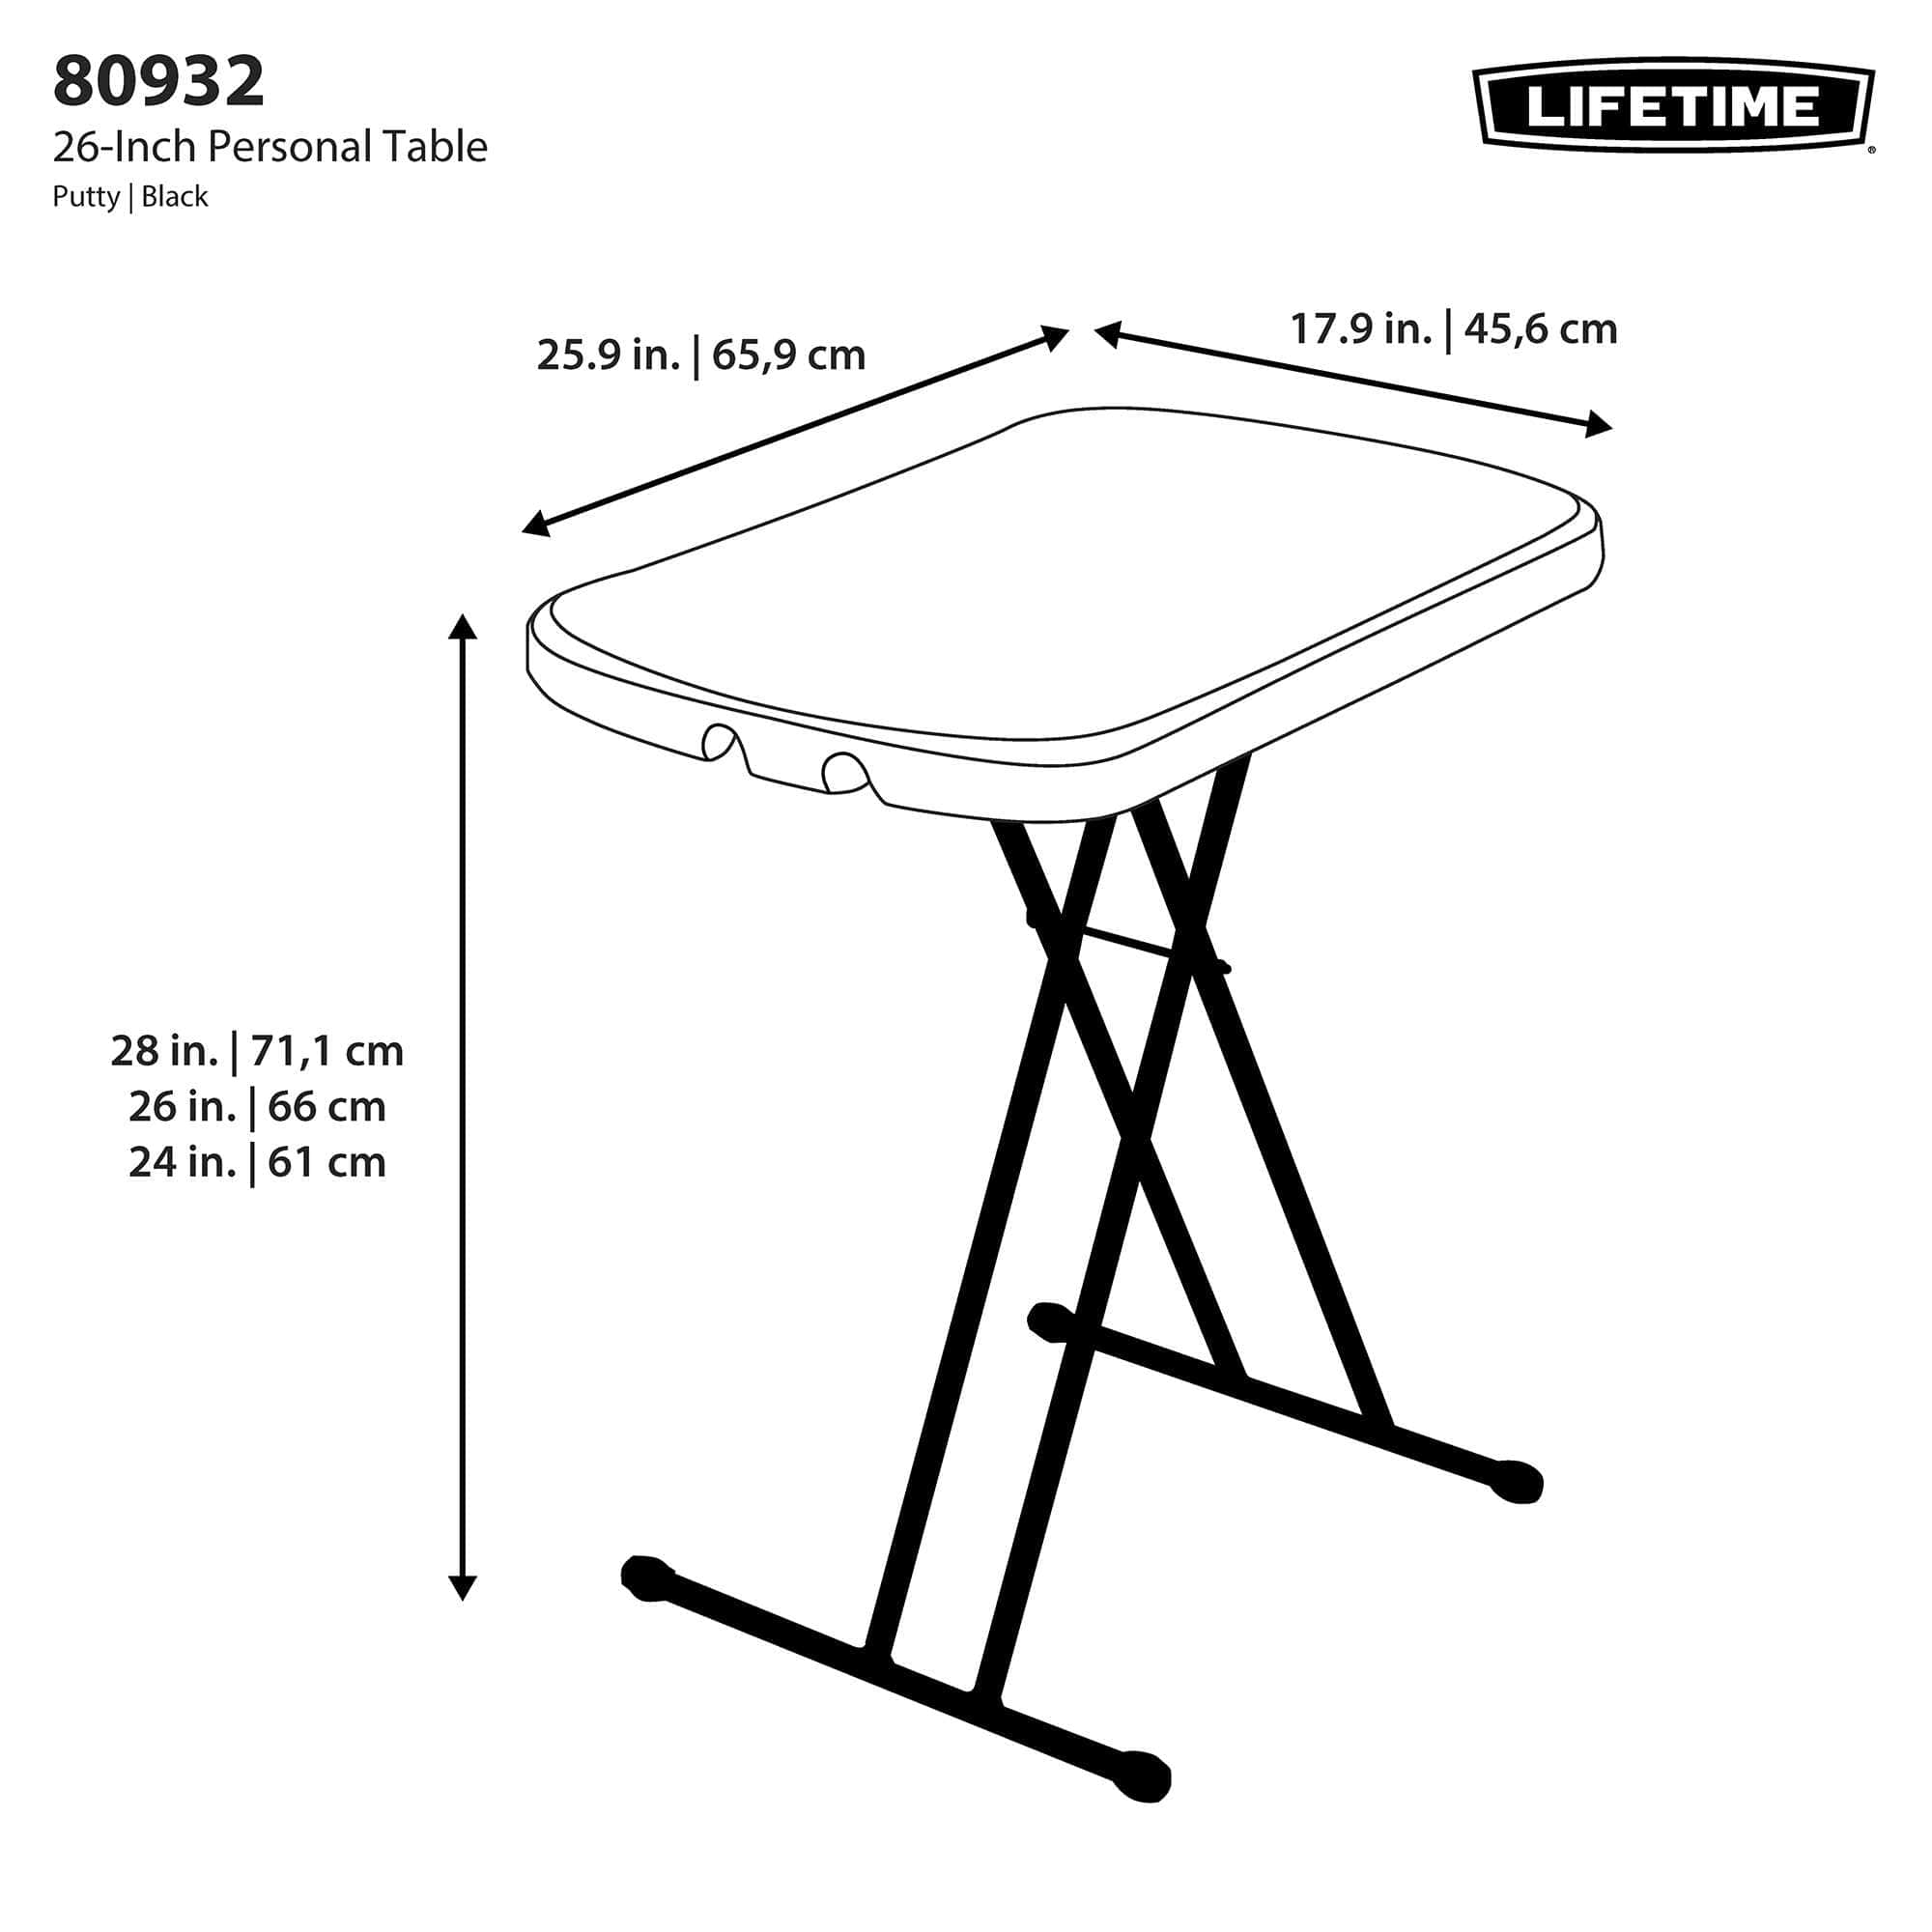 Table pliante ajustable 66 cm / 3 hauteurs réglables